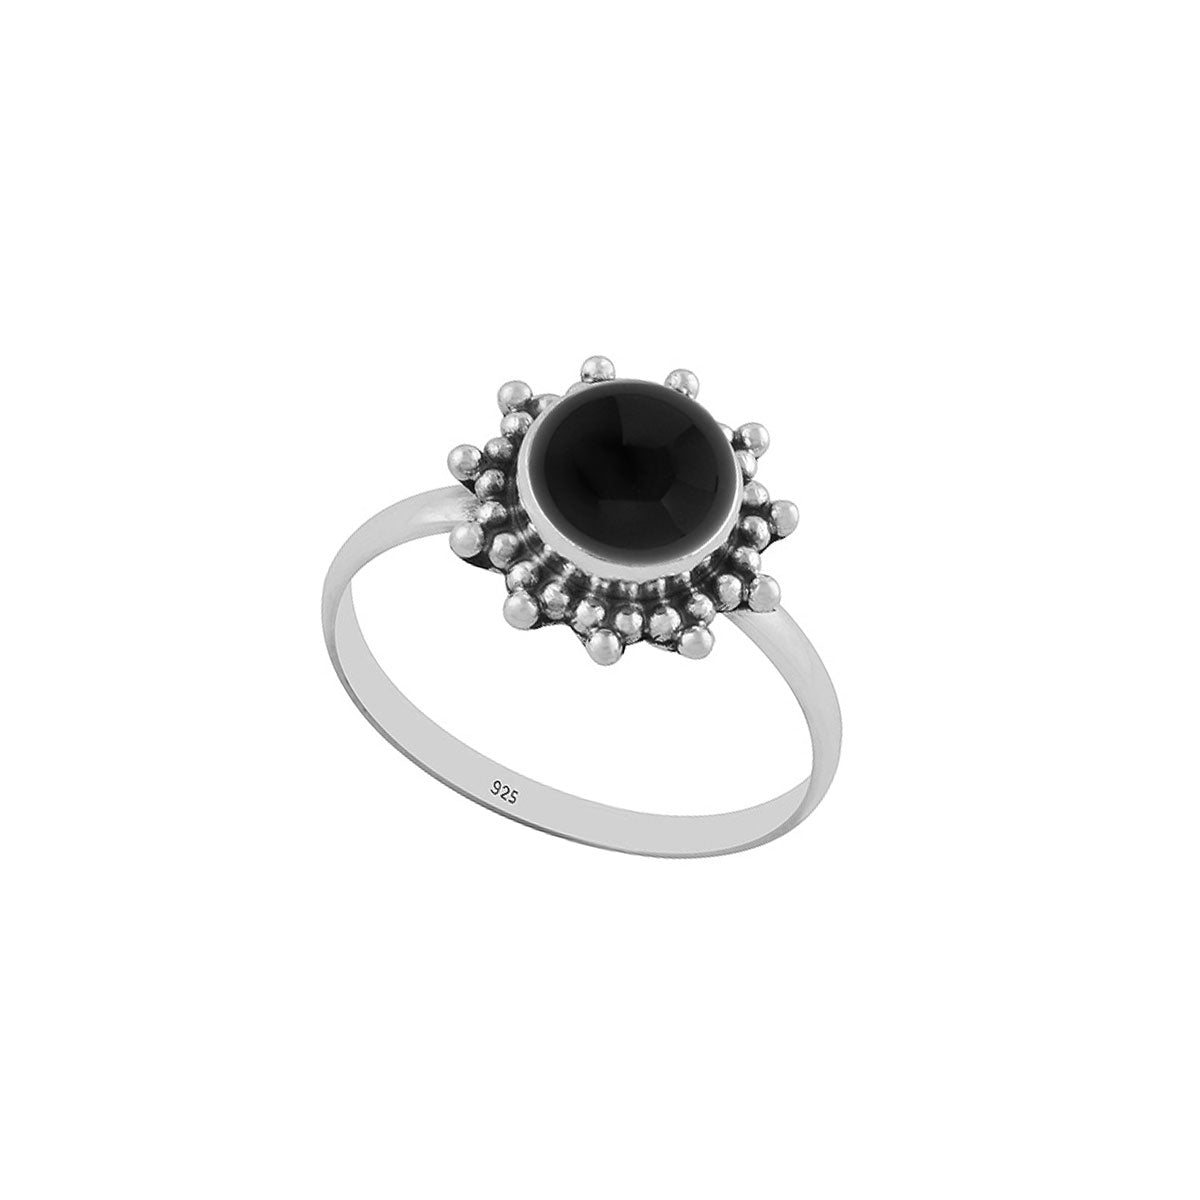 Cemara | Ring 925 zilver met zwarte onyx edelsteen